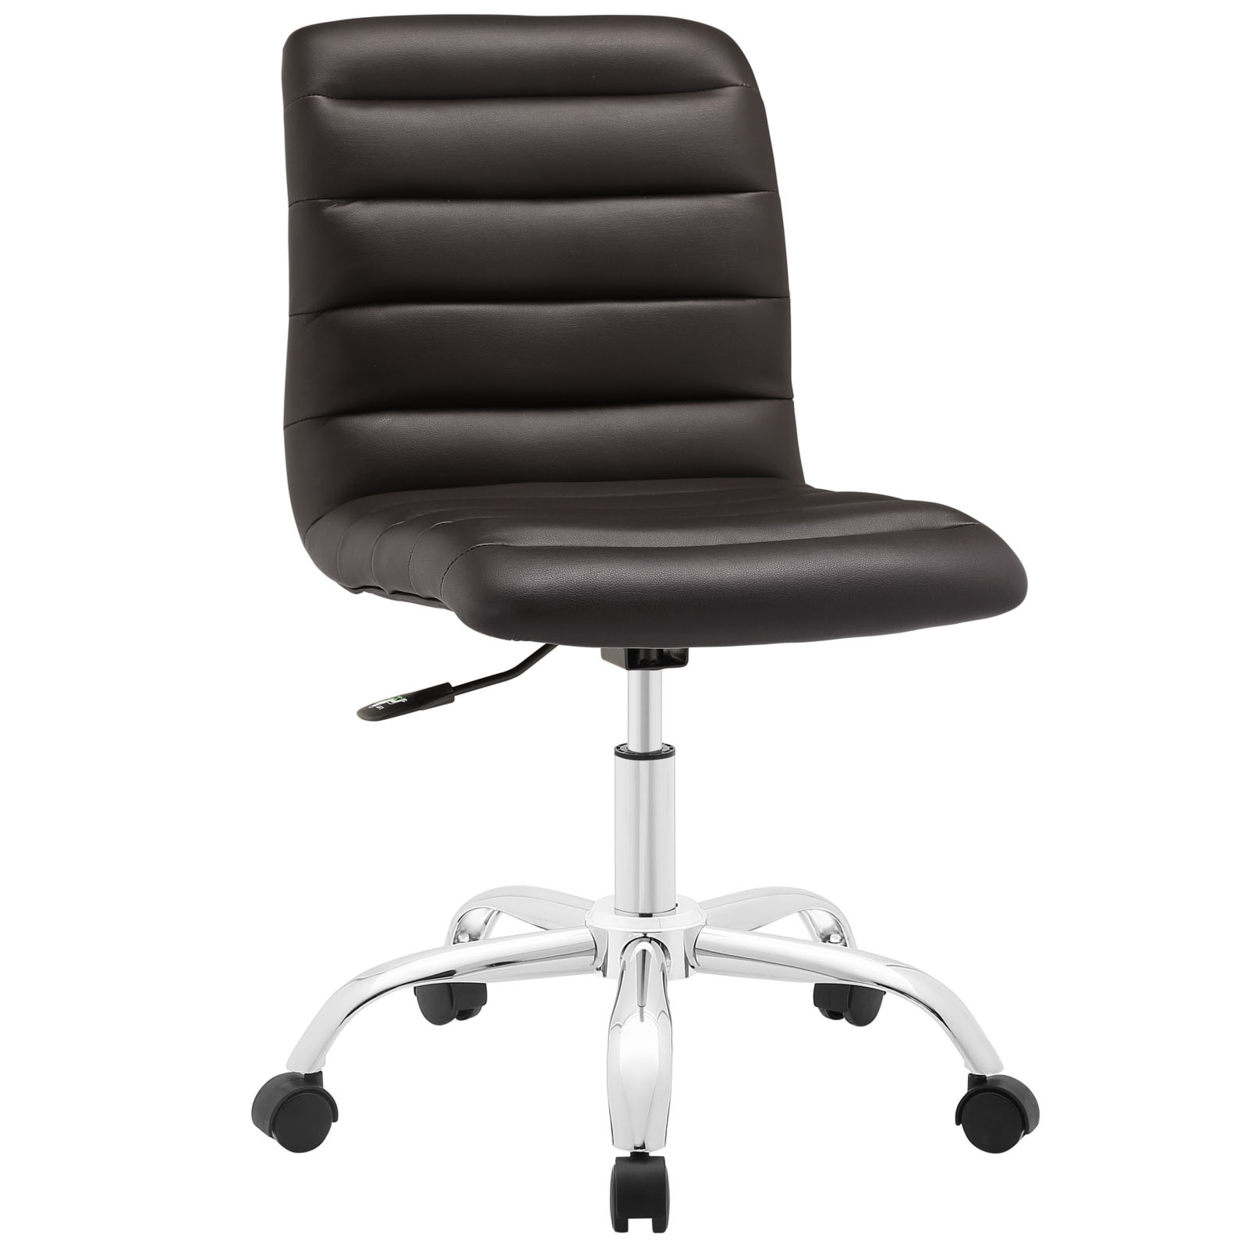 Ripple Armless Mid Back Office Chair, EEI-1532-BRN